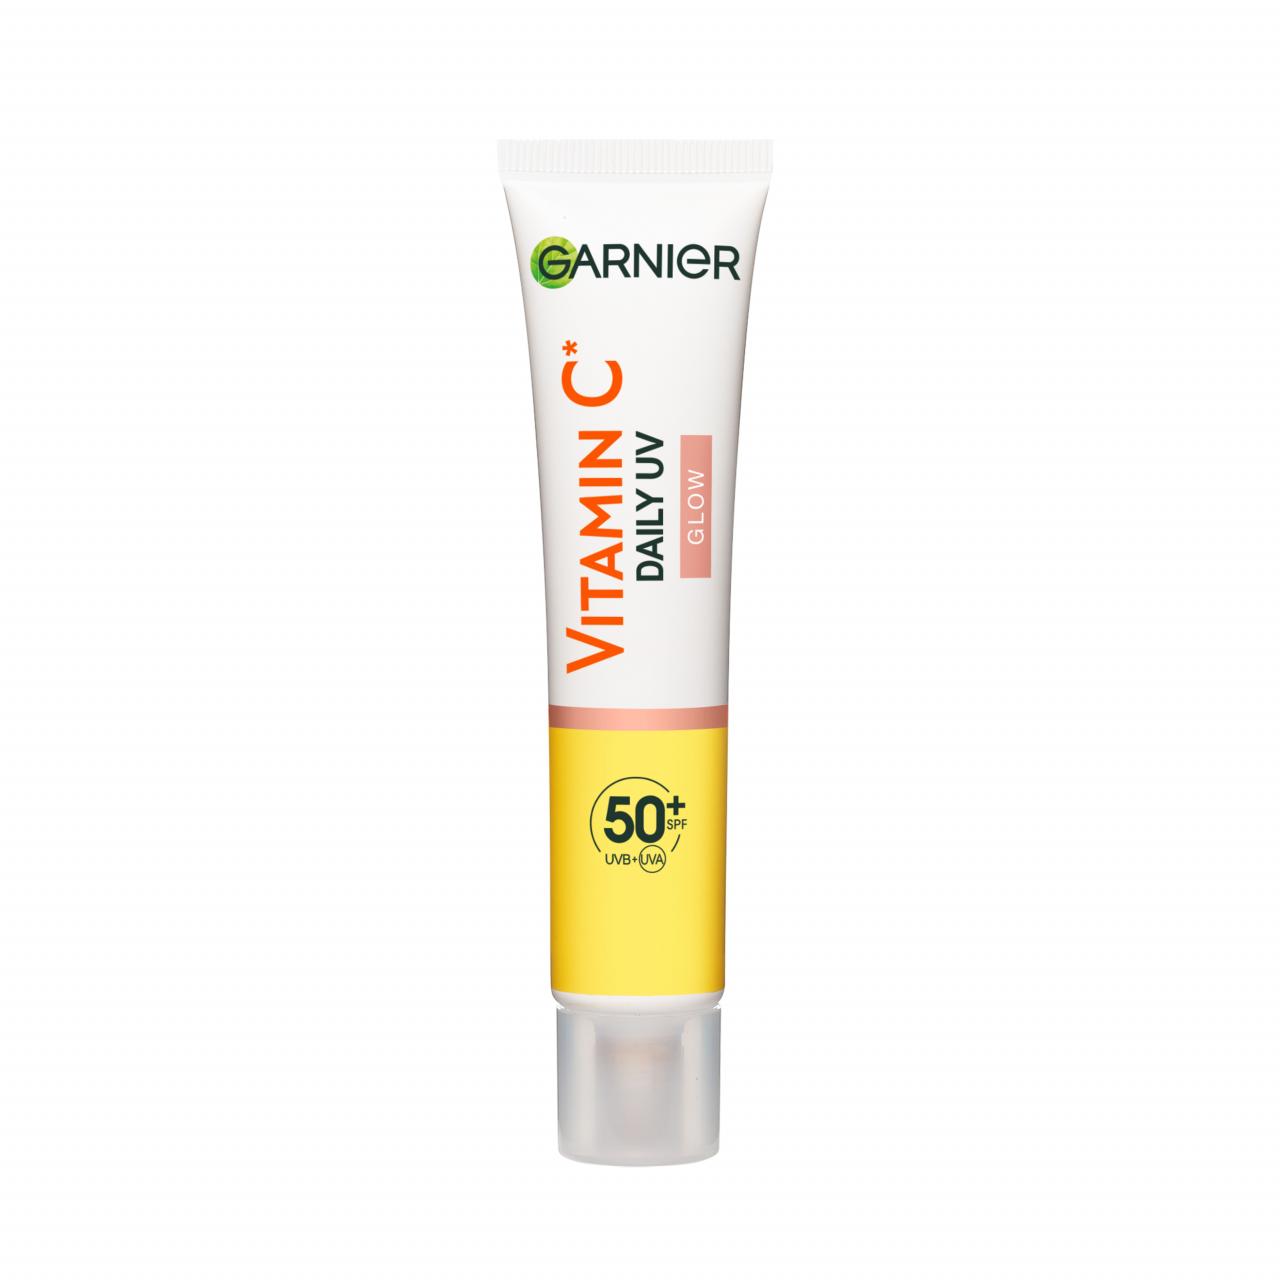 Fluide Daily UV anti-tâches Vitamine C Glow SPF50+, Garnier, 16,99 euros les 40 ml